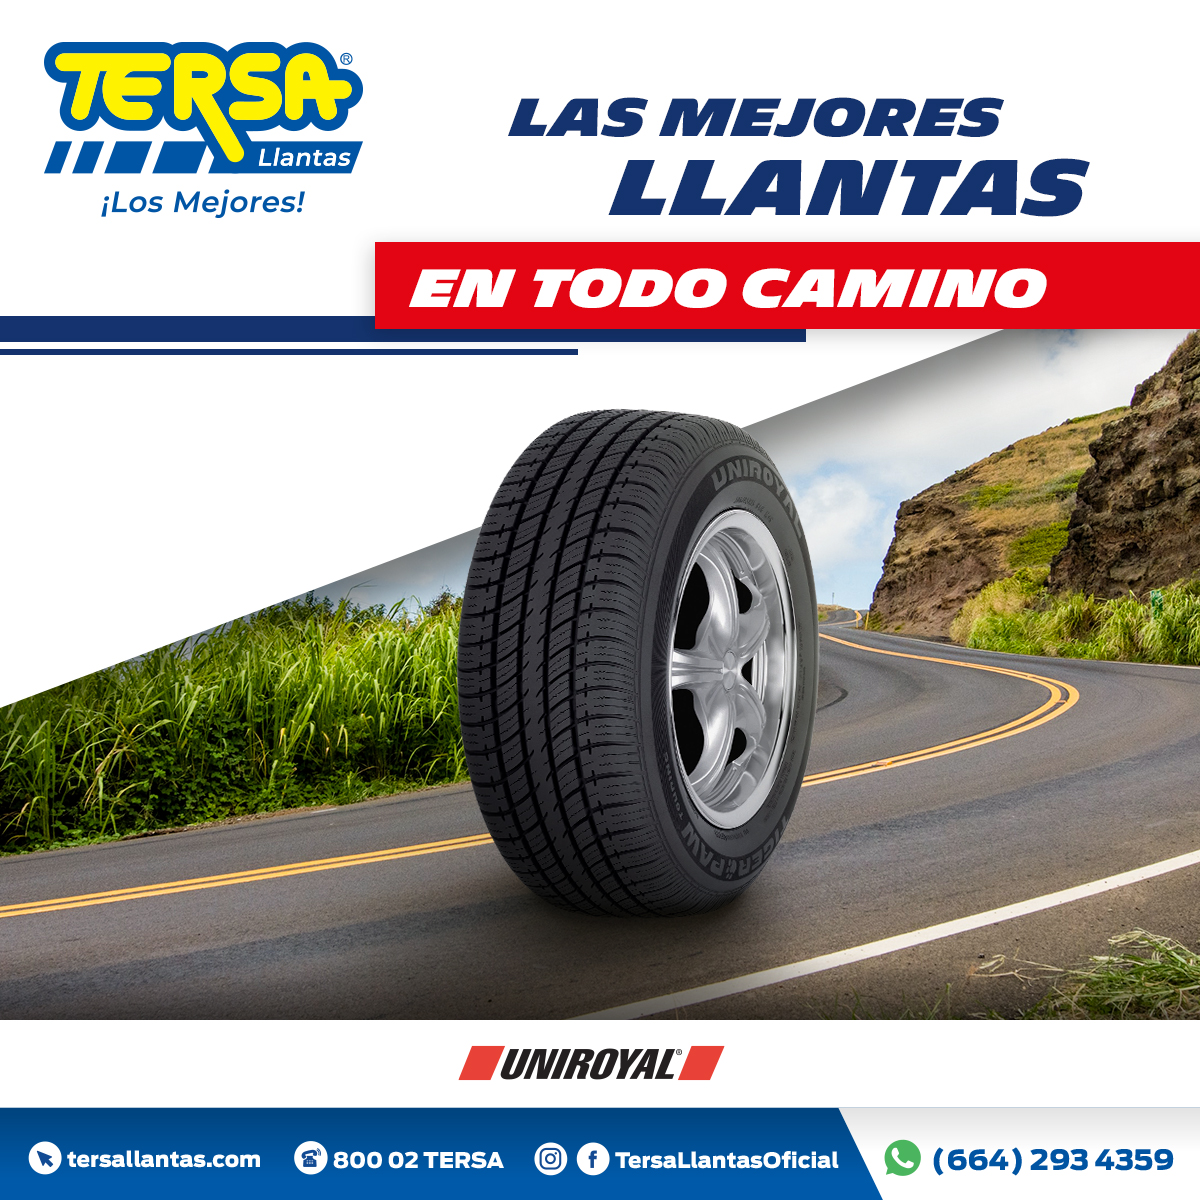 TERSA Llantas & Car Service on Twitter: "Ven a TERSA y llévate confía en las llantas que cuidan a tu familia. Escríbenos por Whatsapp y obtén tu cotización: